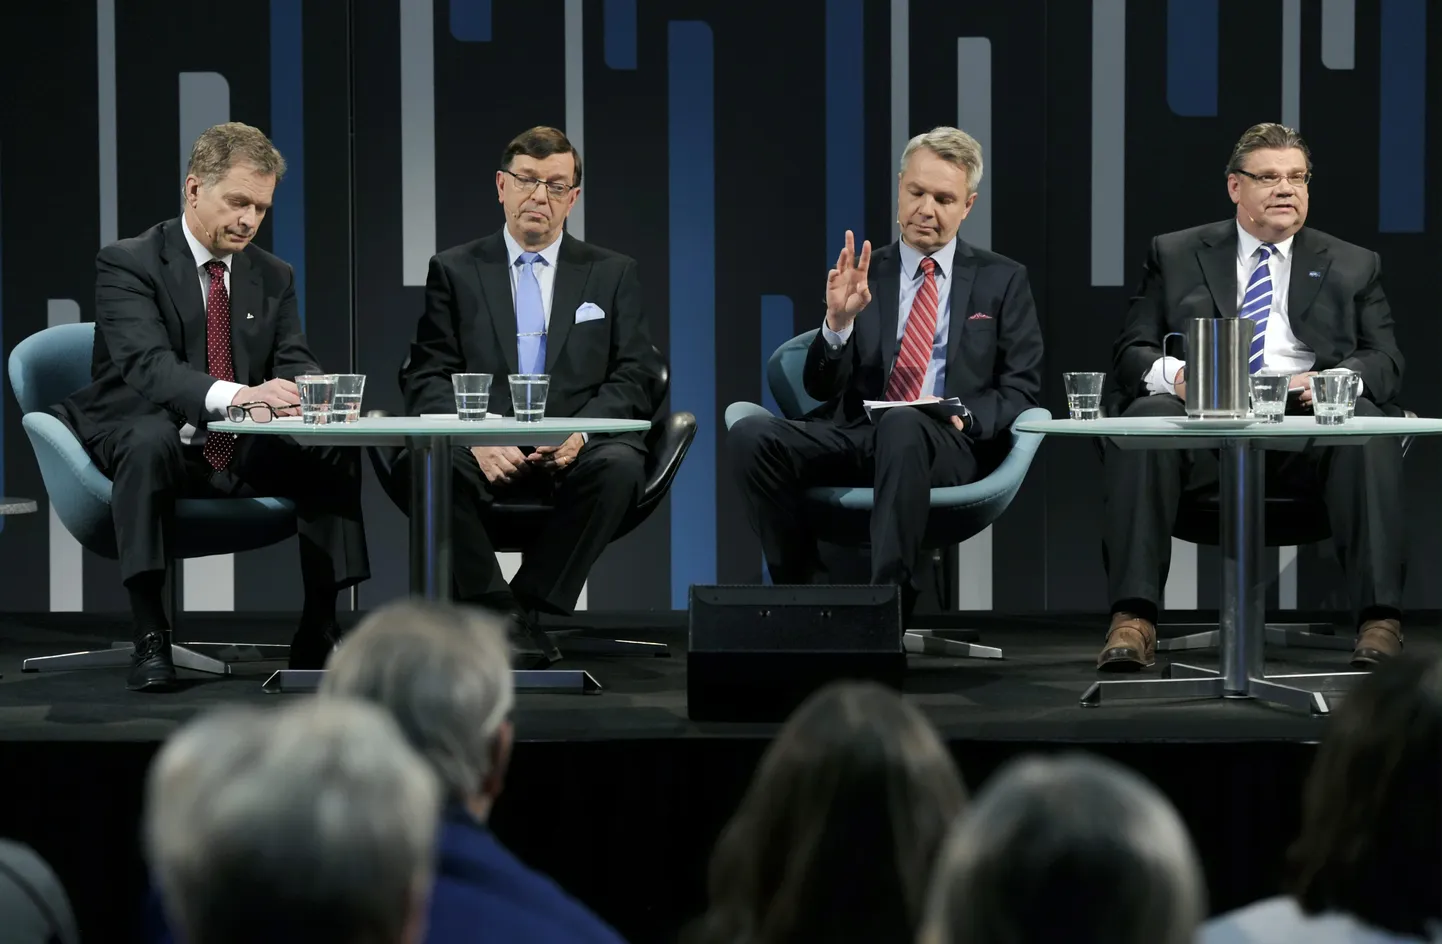 Presidendikandidaadid (vasakult) Sauli Niinistö, Paavo Väyrynen, Pekka Haavisto ja Timo Soini.